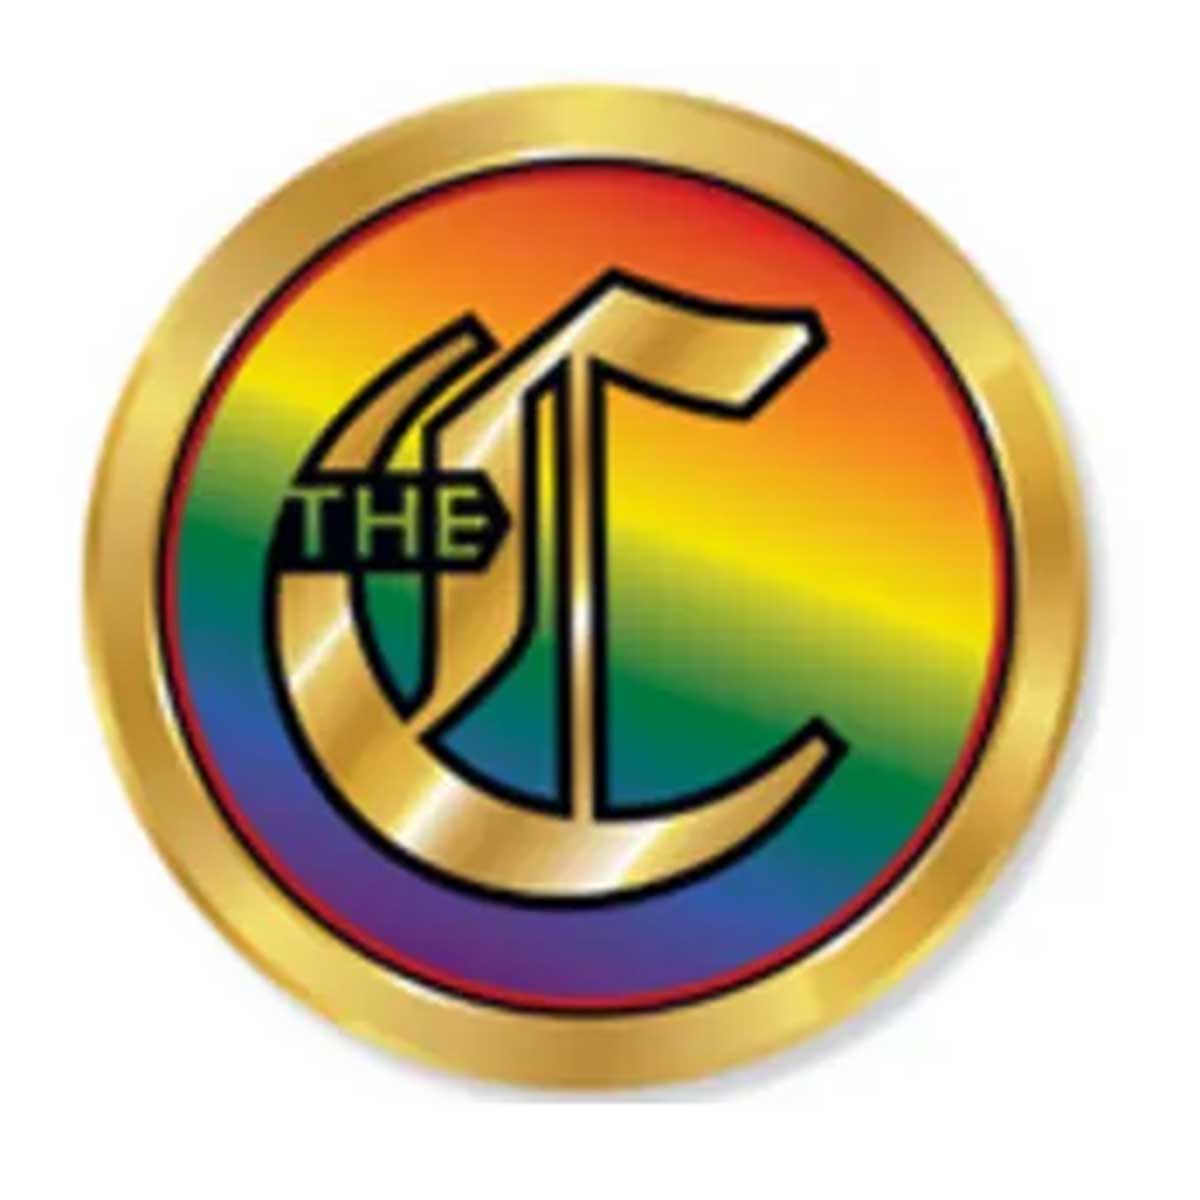 The Cartomancer Magazine logo.